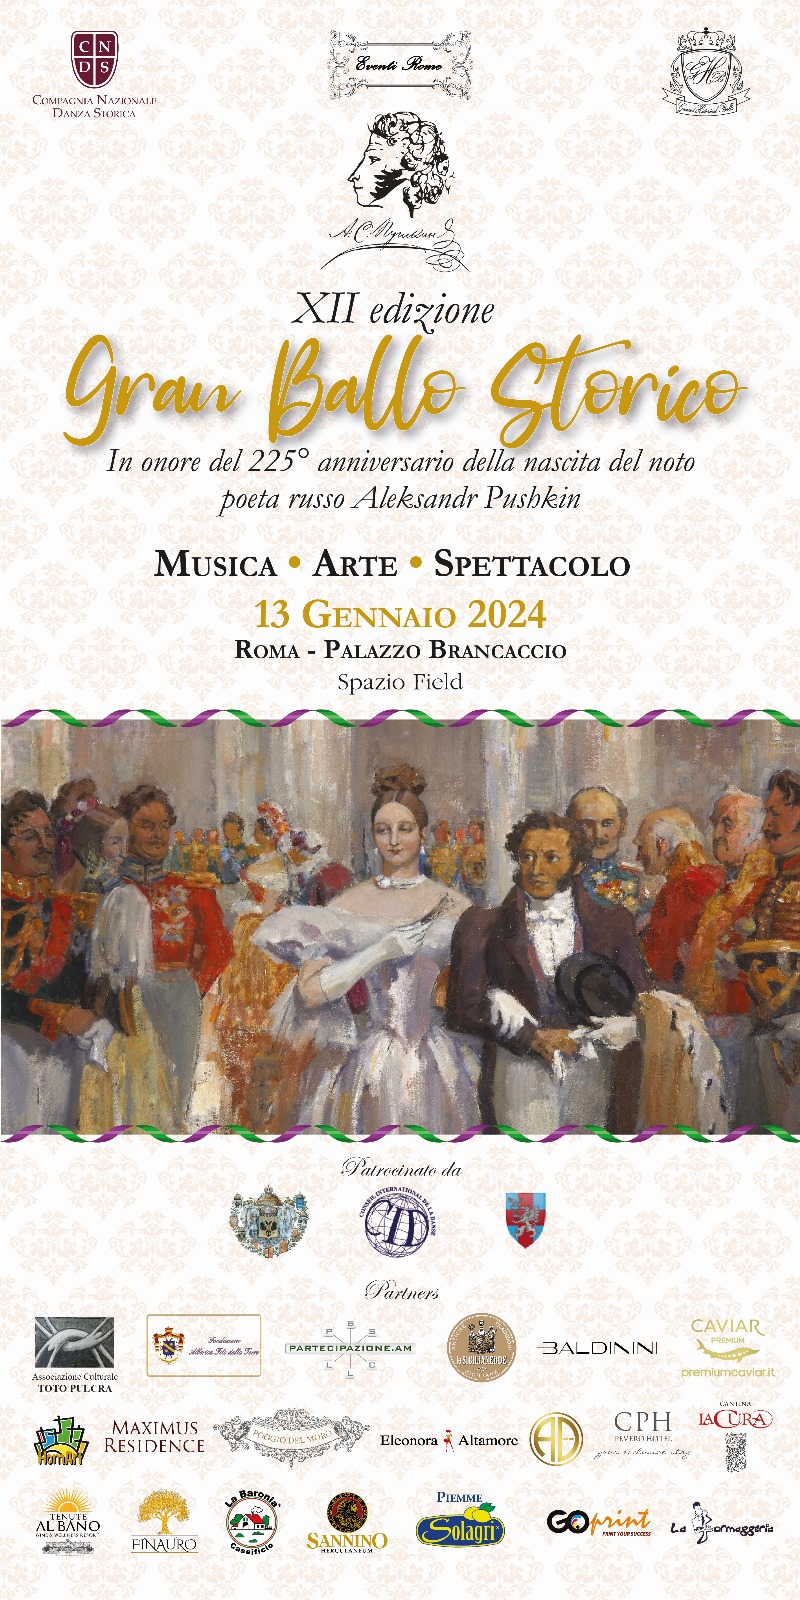 GRAN BALLO STORICO XII° EDIZIONE - Il mondo della cultura musicale Italiana e del ballo incontra le altre culture